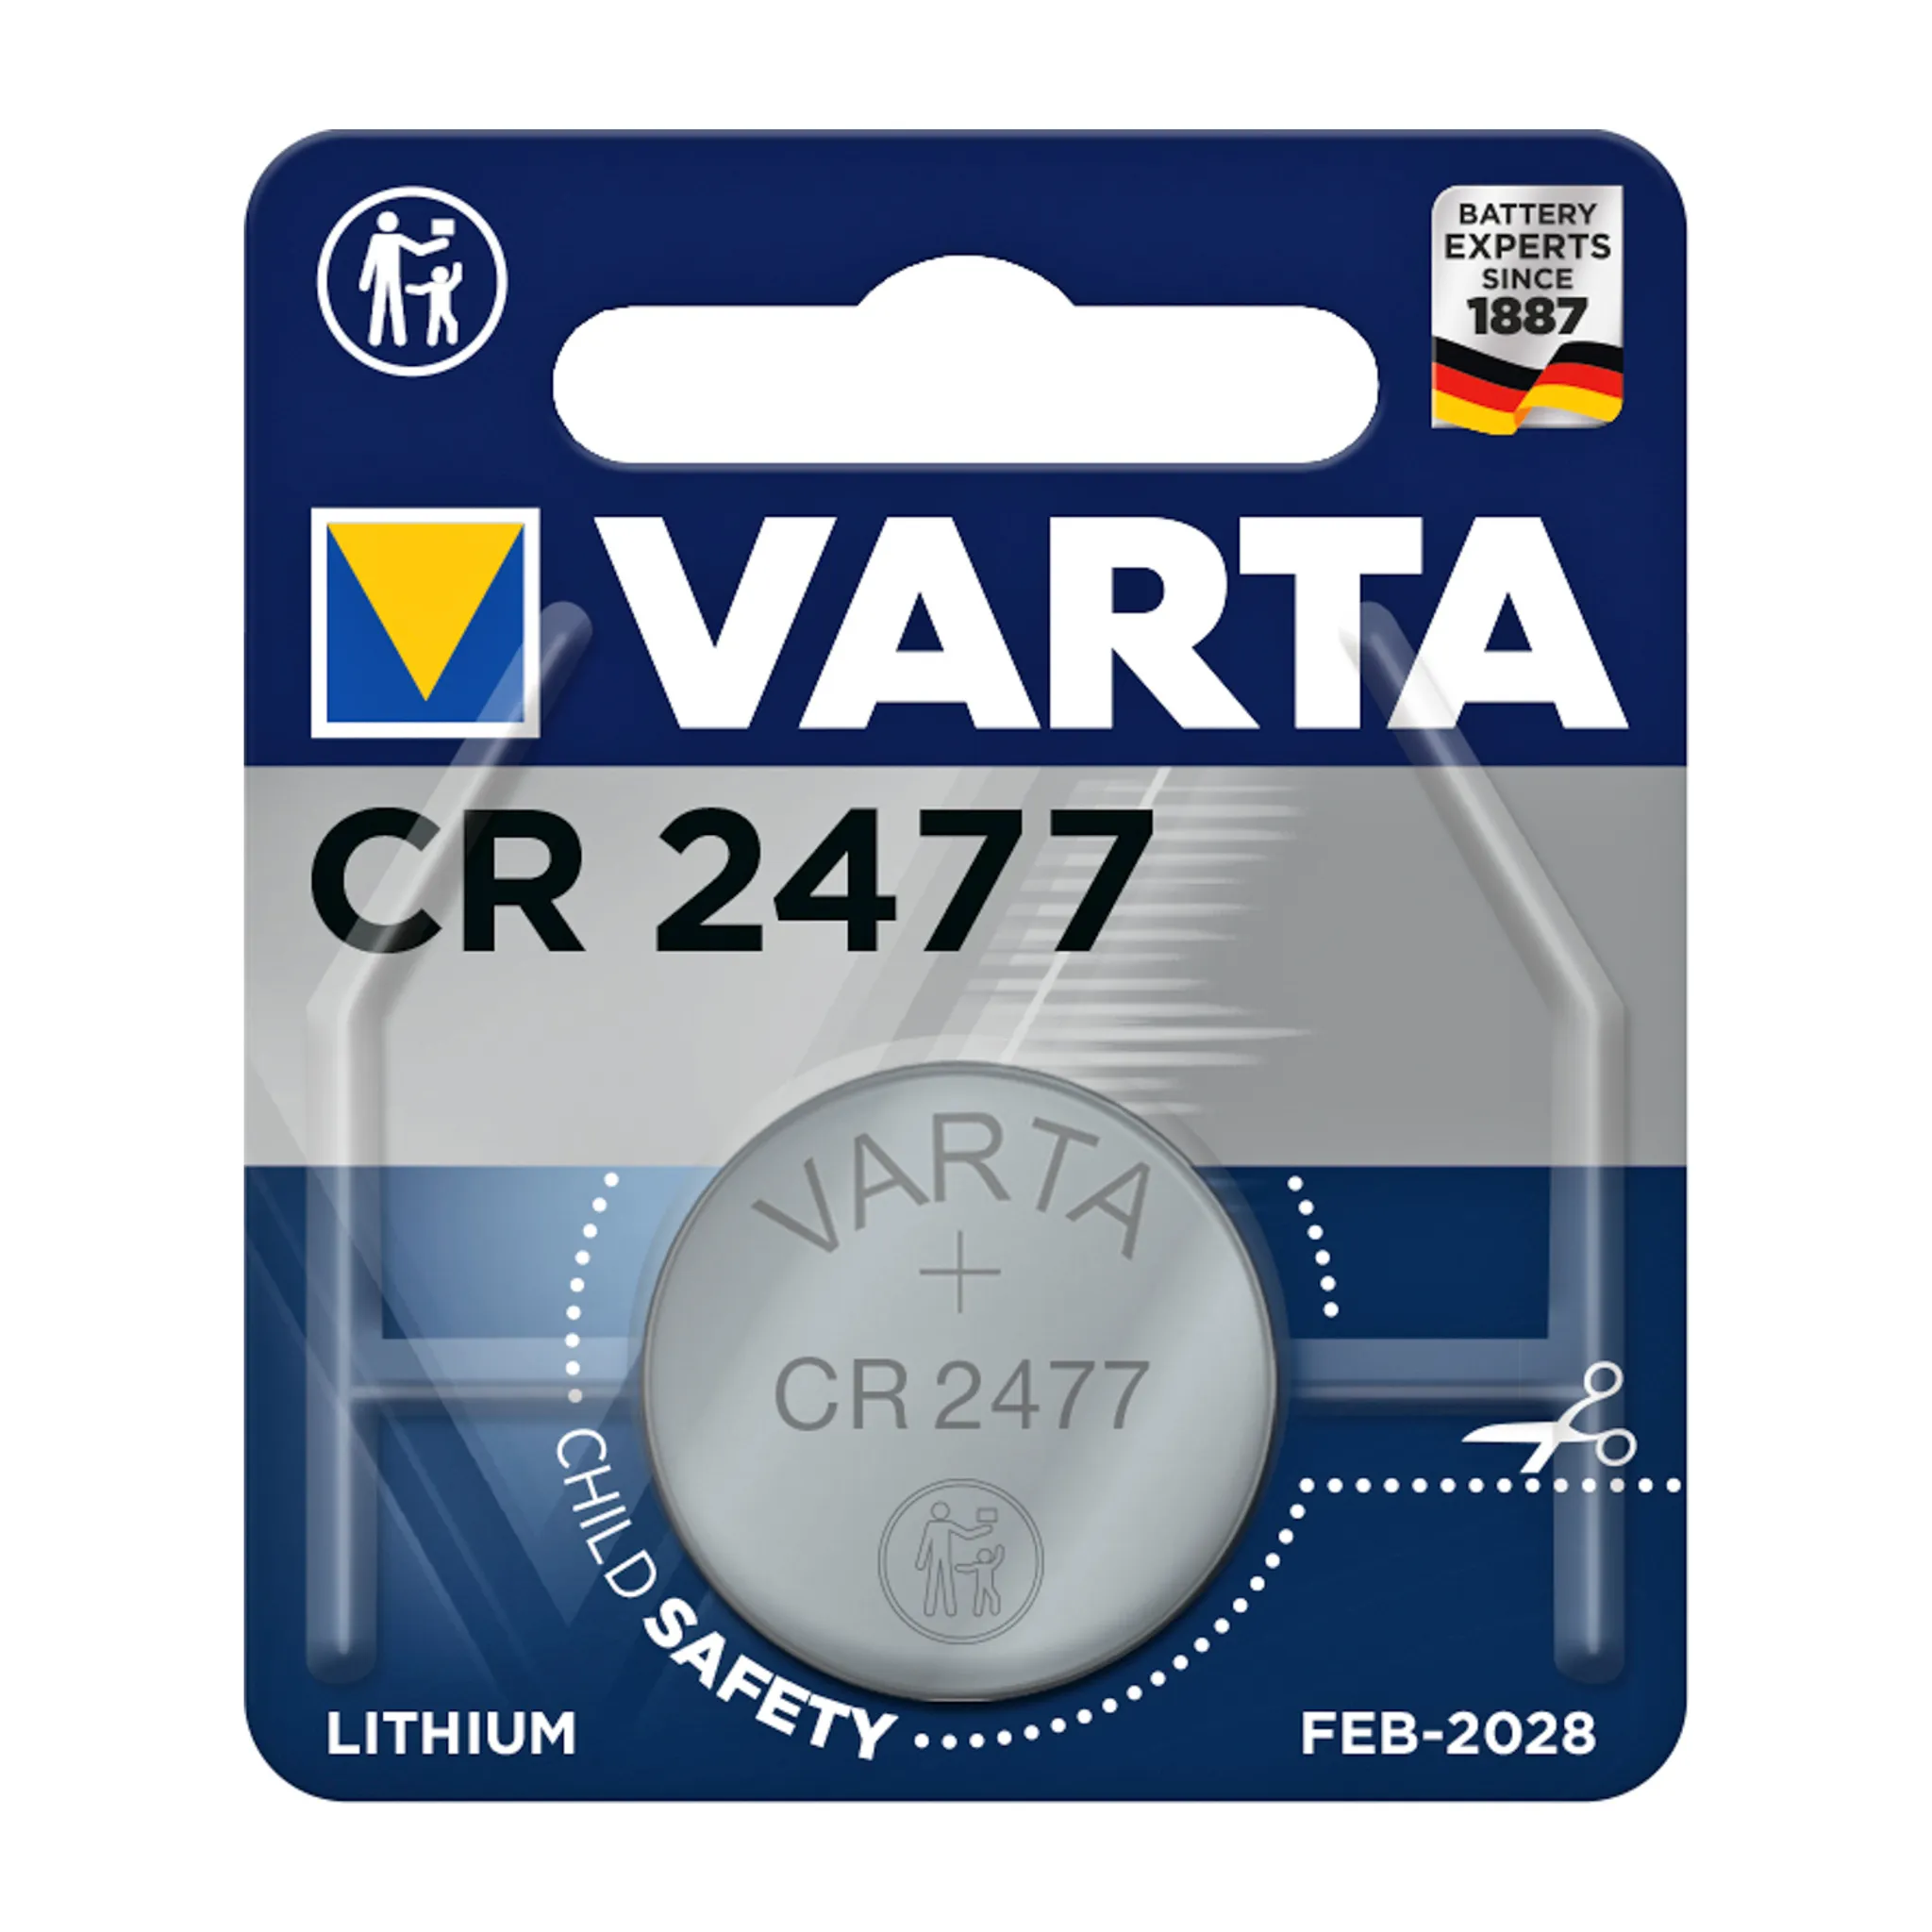 VARTA Batterie Knopfzelle Uhr V377 1,55 Volt (1St)